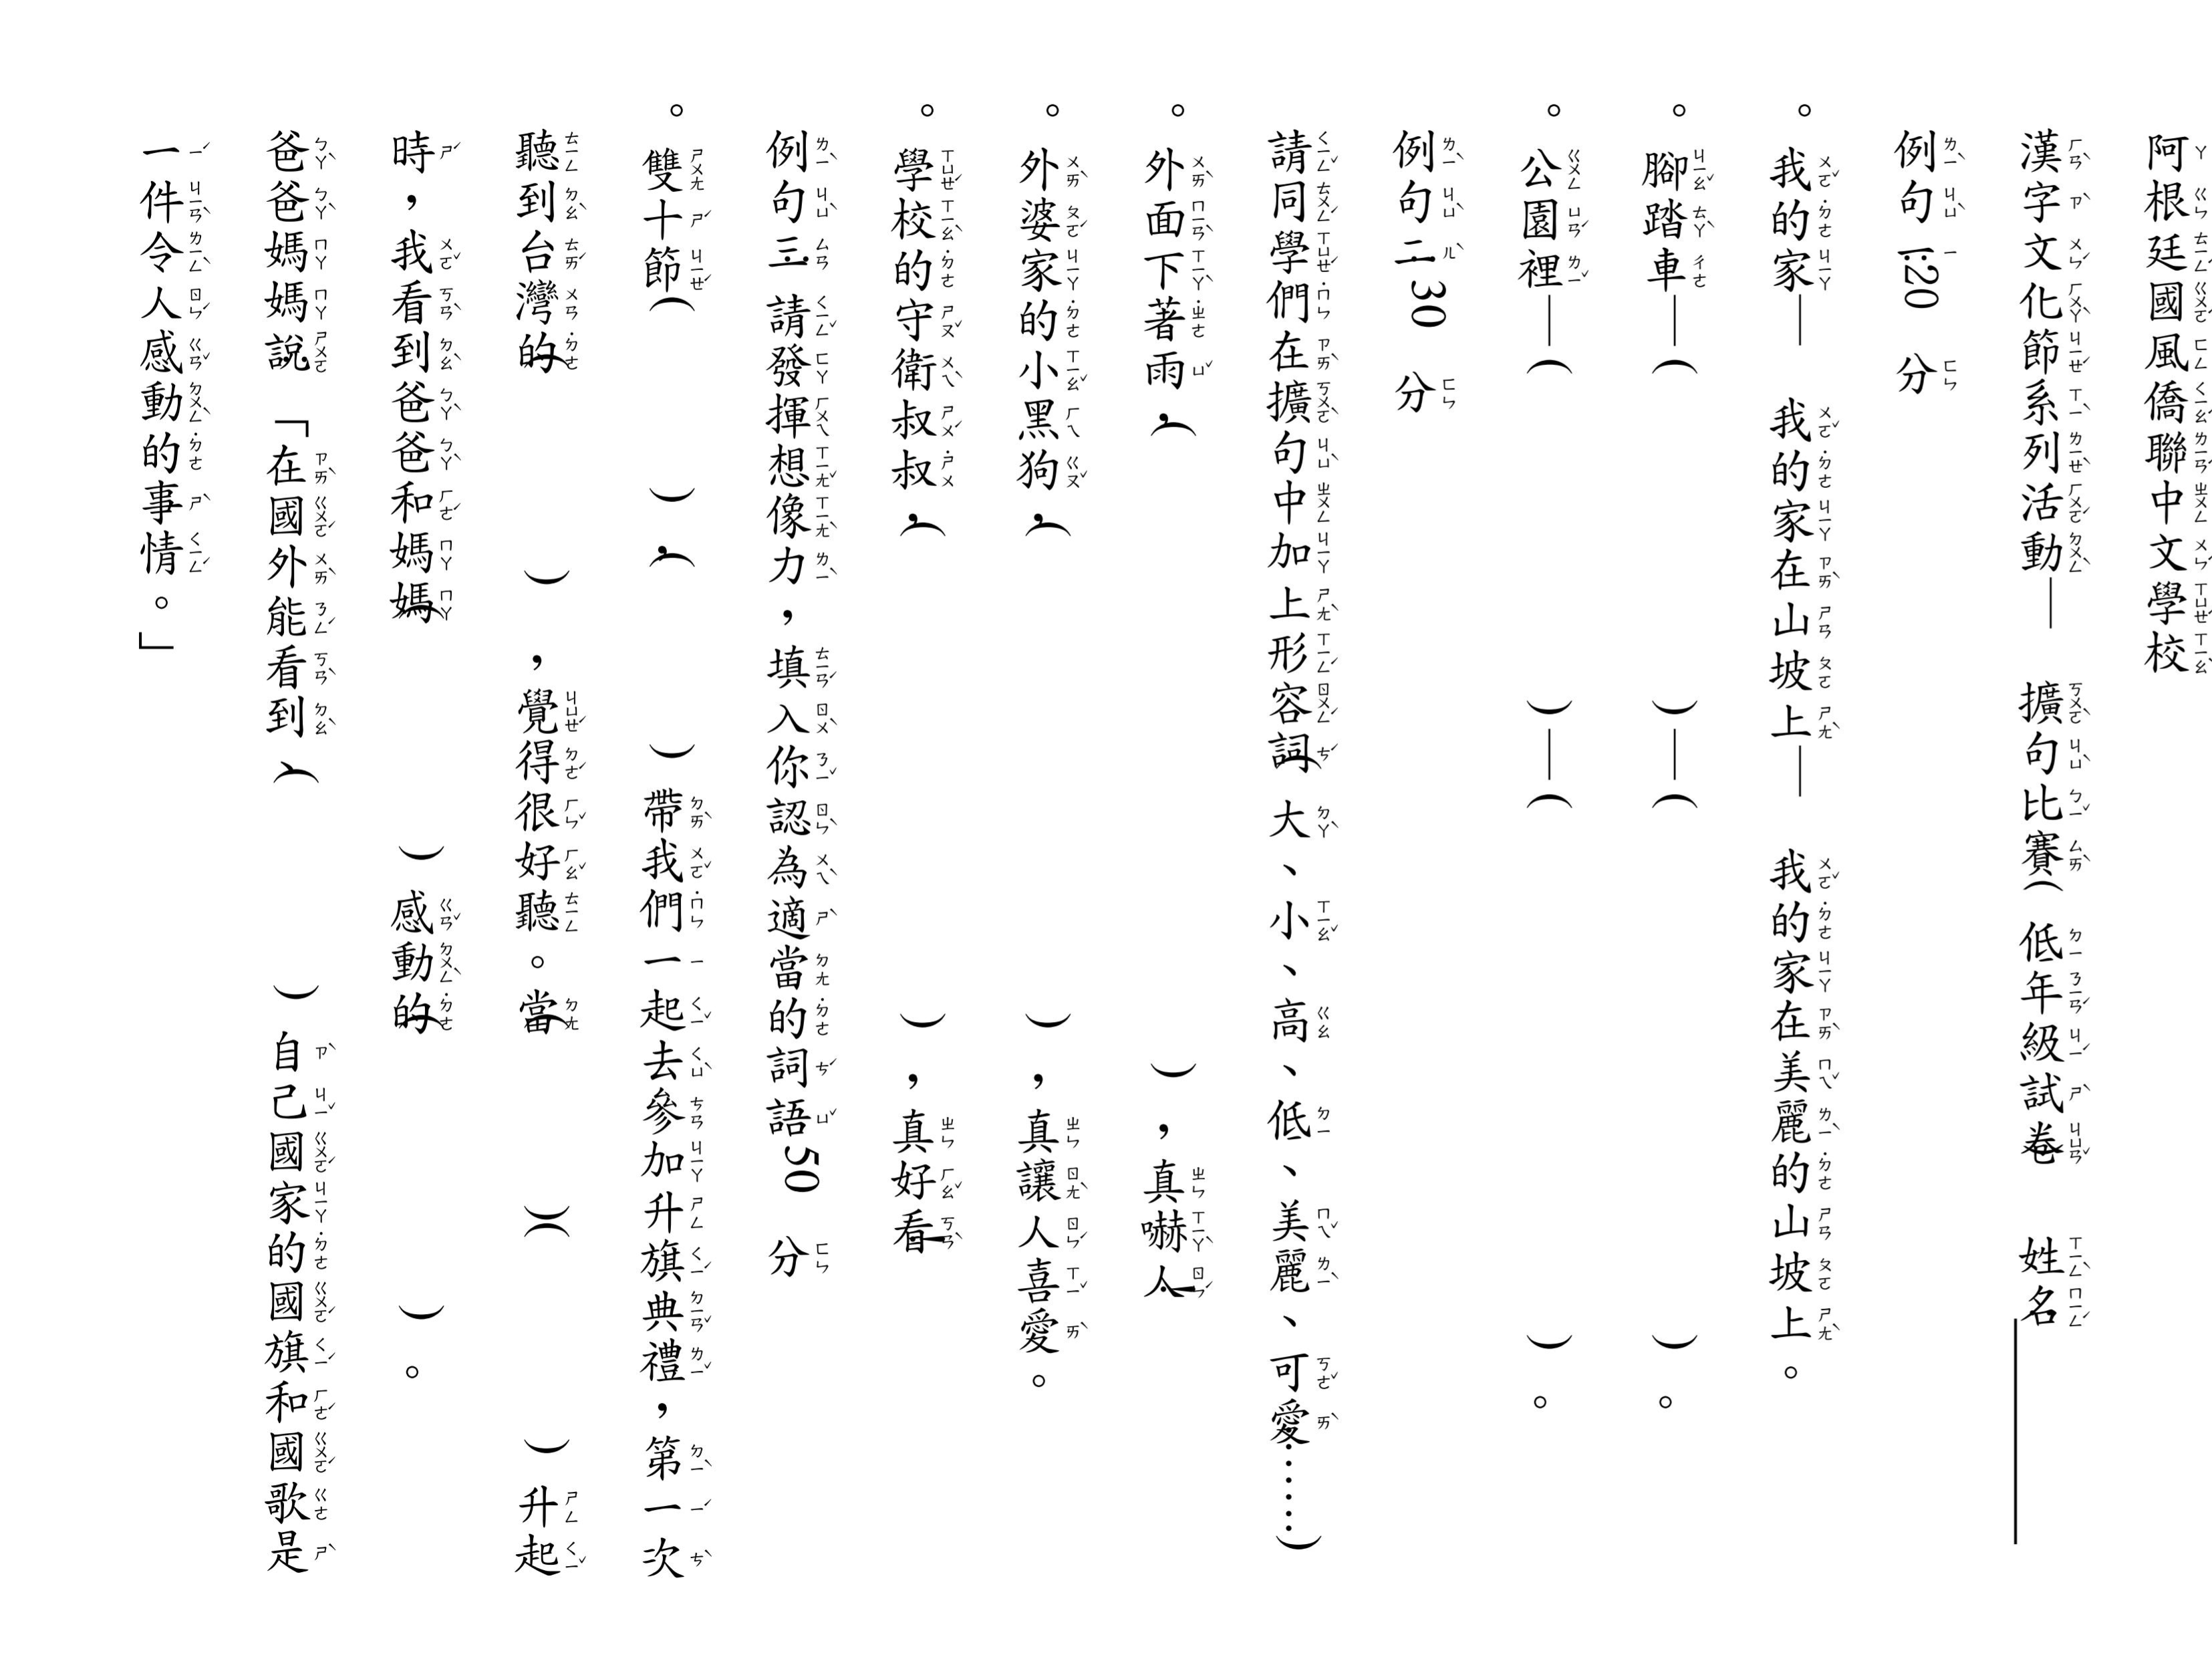 國風僑聯中文學校-2021年漢字文化節系列第三季--- 擴句比賽圖片